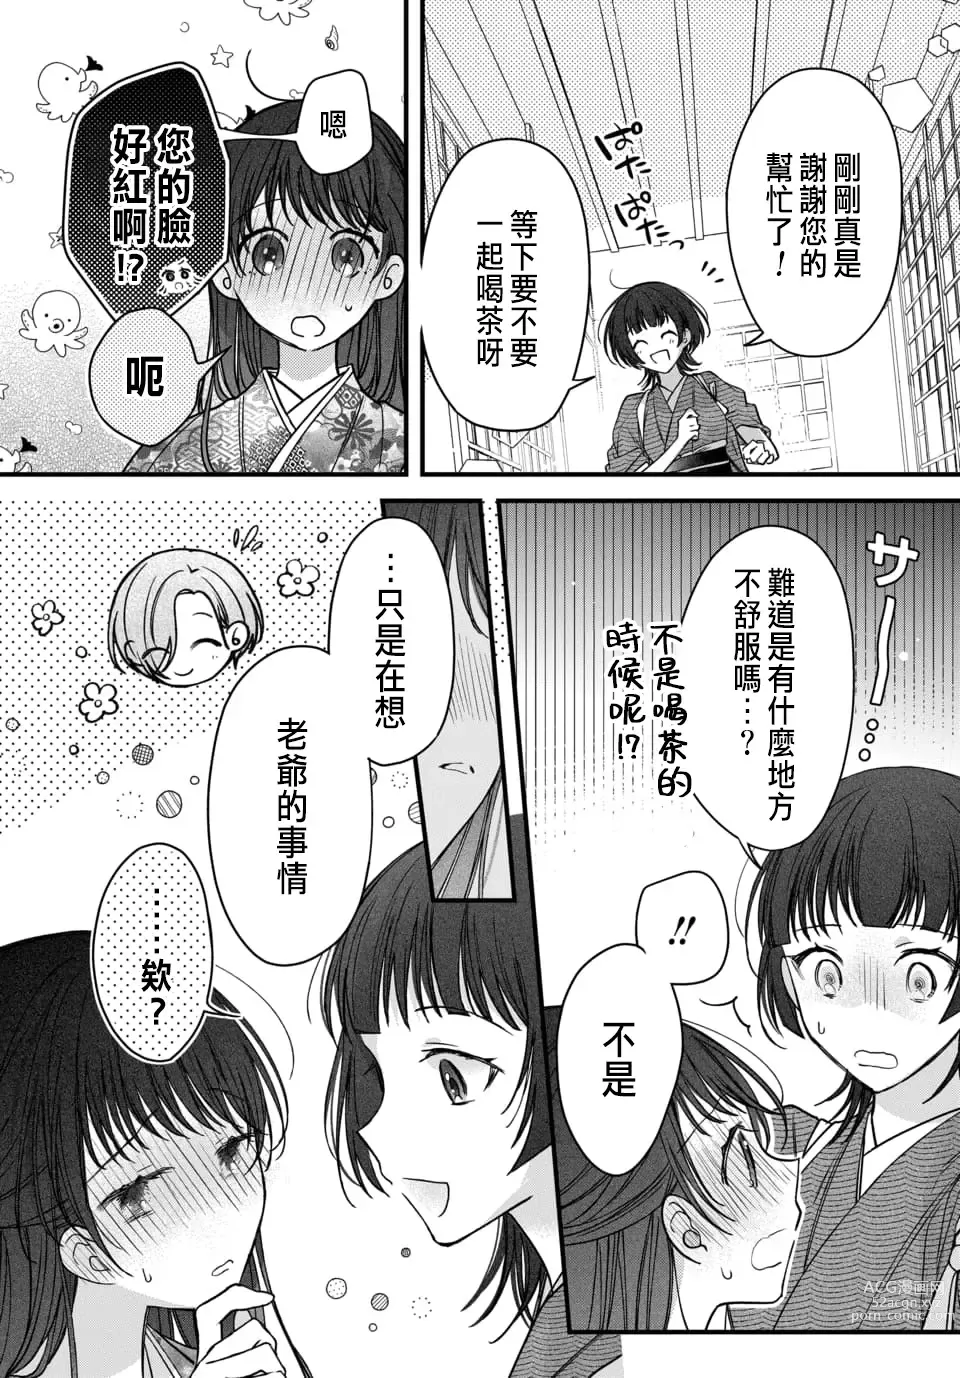 Page 222 of manga Tsuki e no Yomeiri 1-6